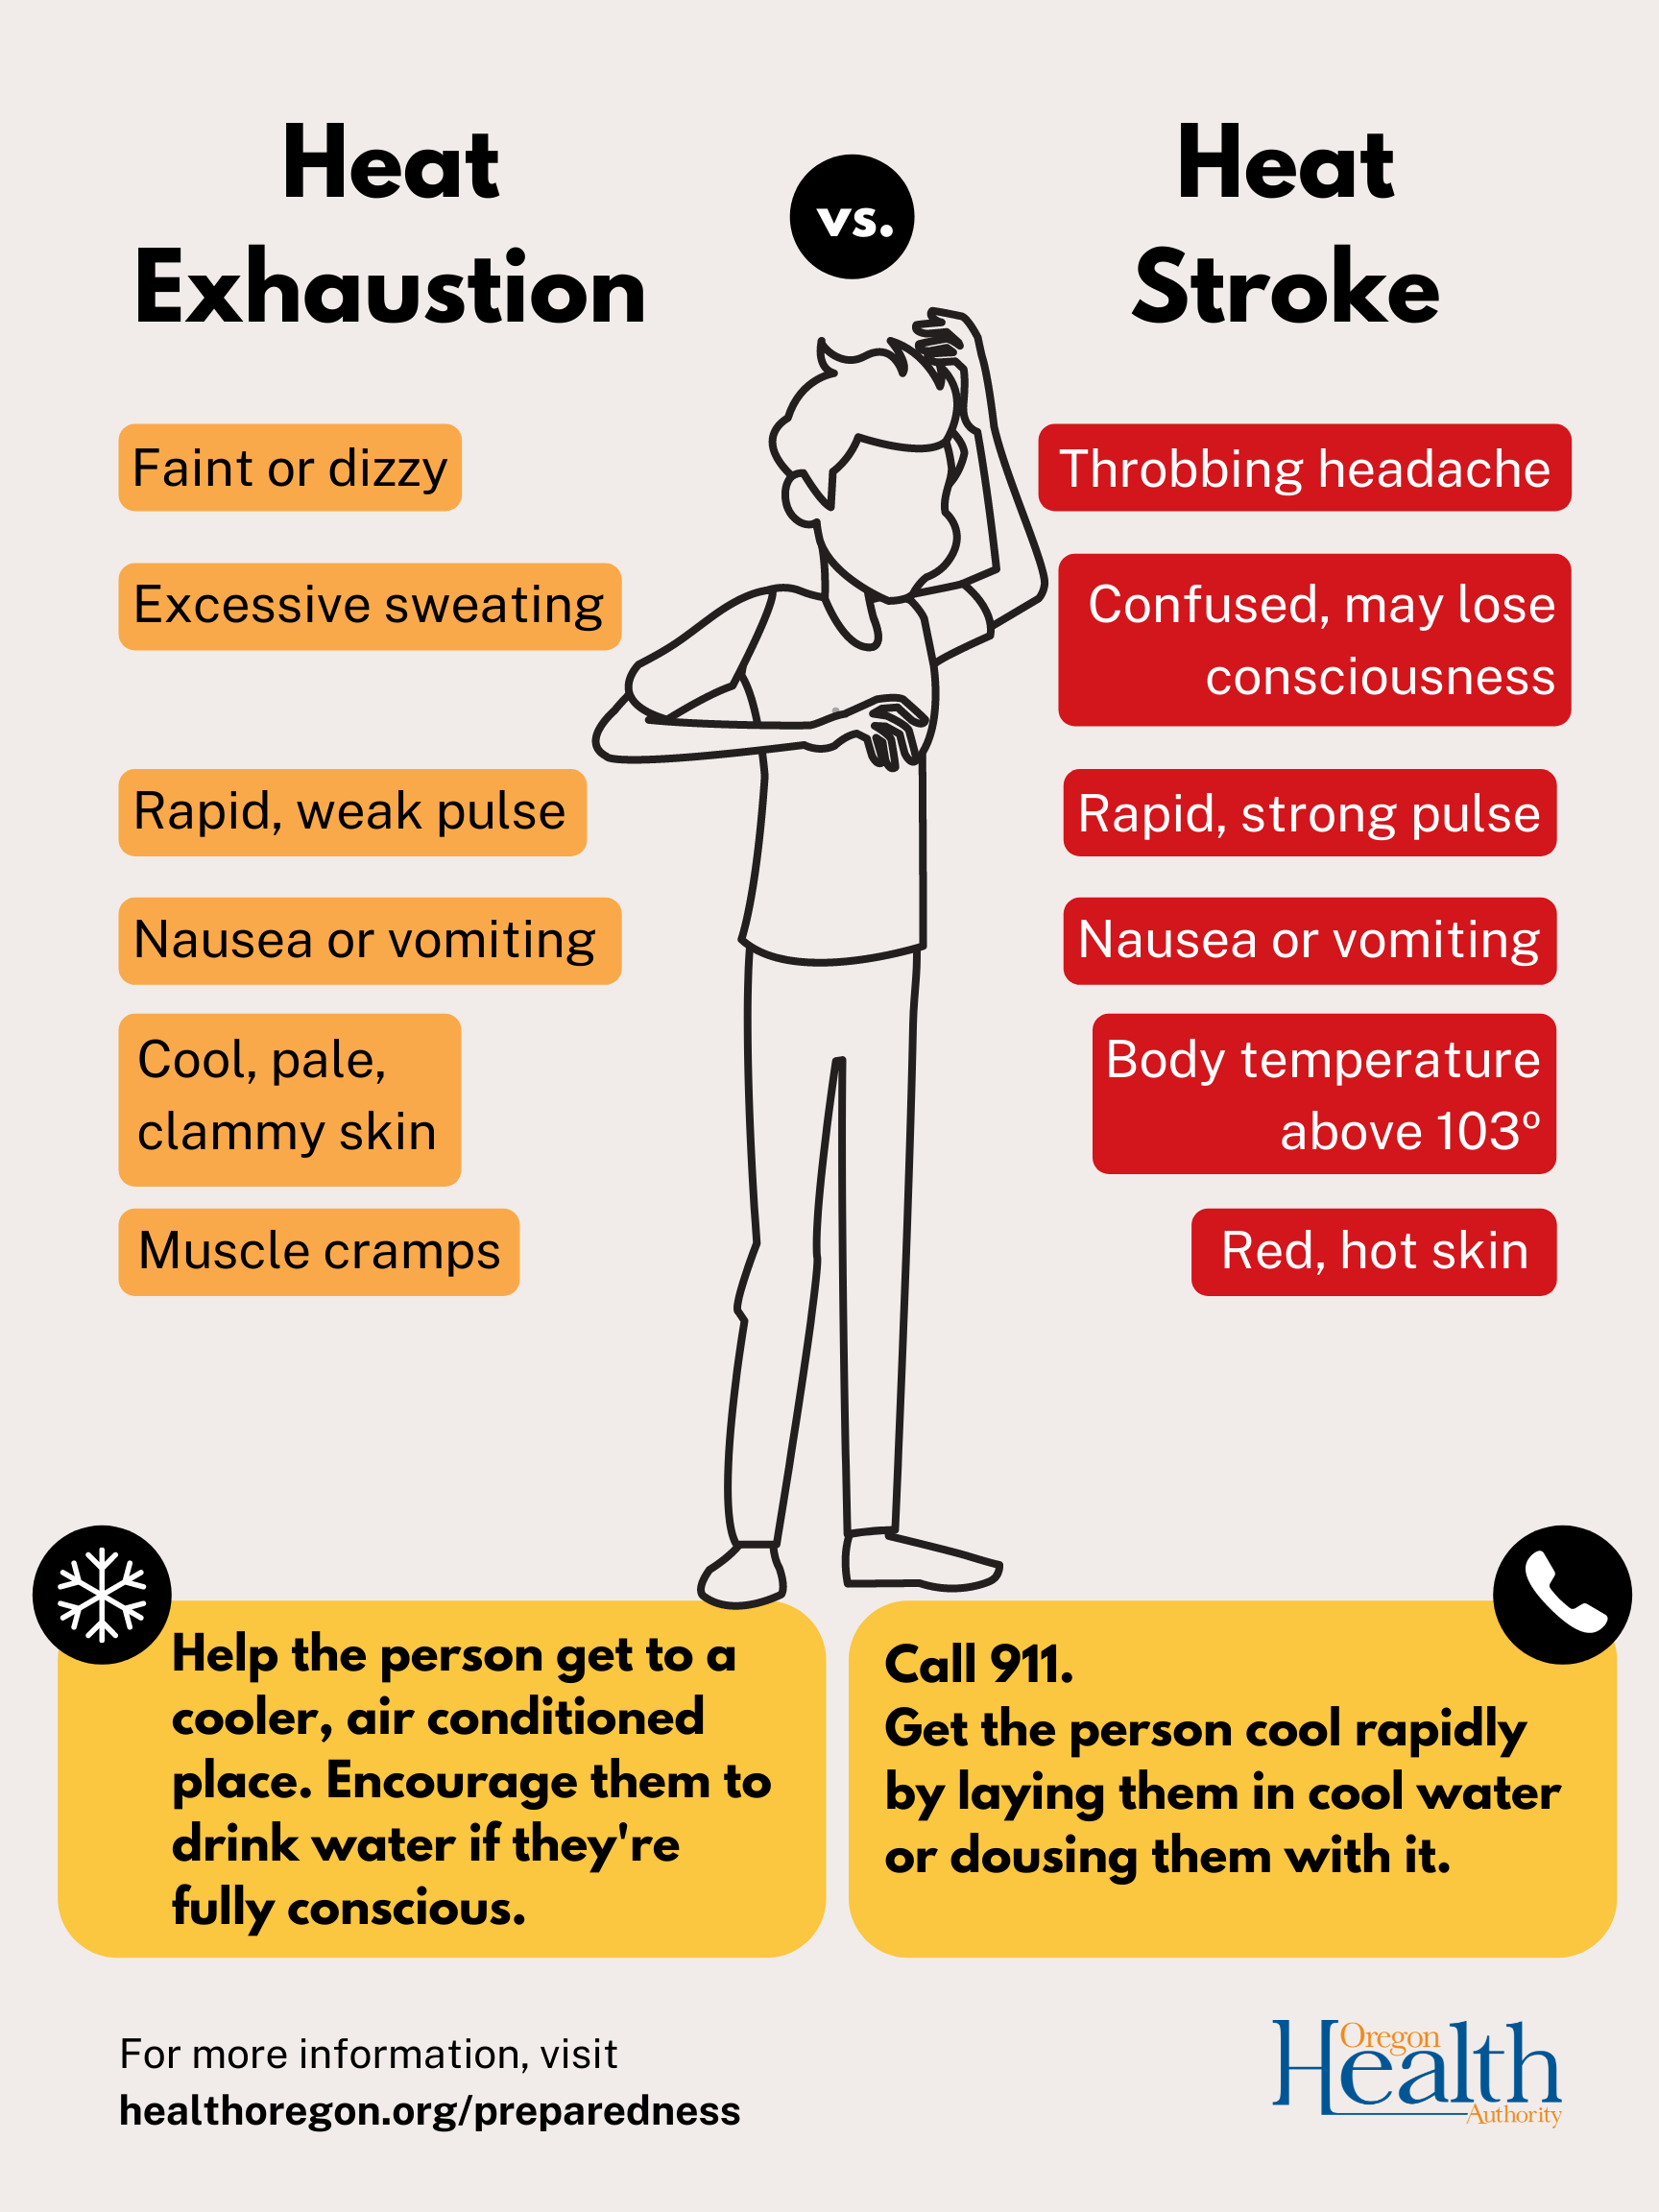 Heat Stroke vs Heat Exhaustion